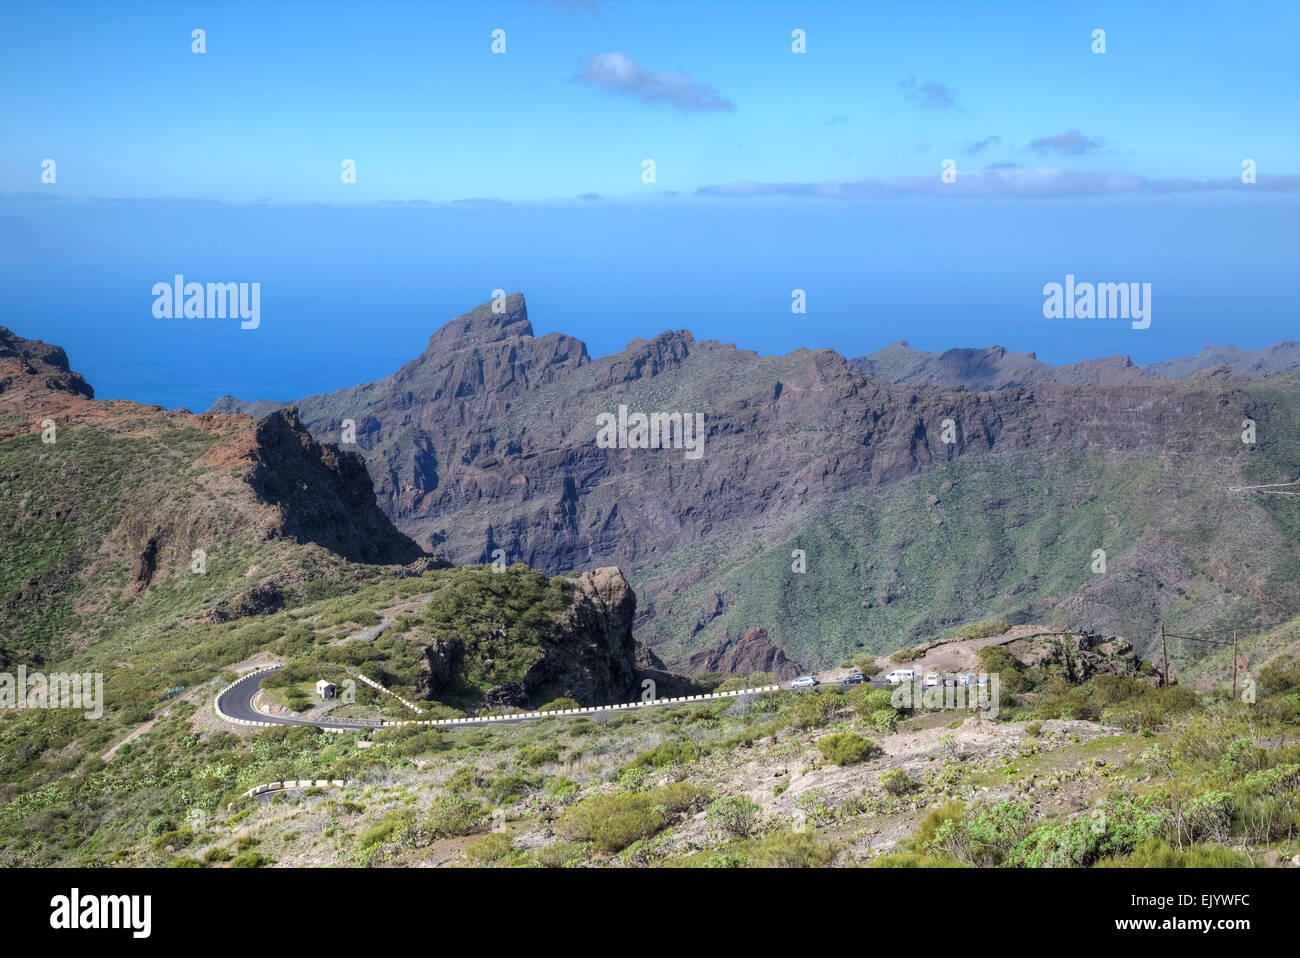 Tenerife, Masca, Teno Massif, Canary Islands, Spain Stock Photo